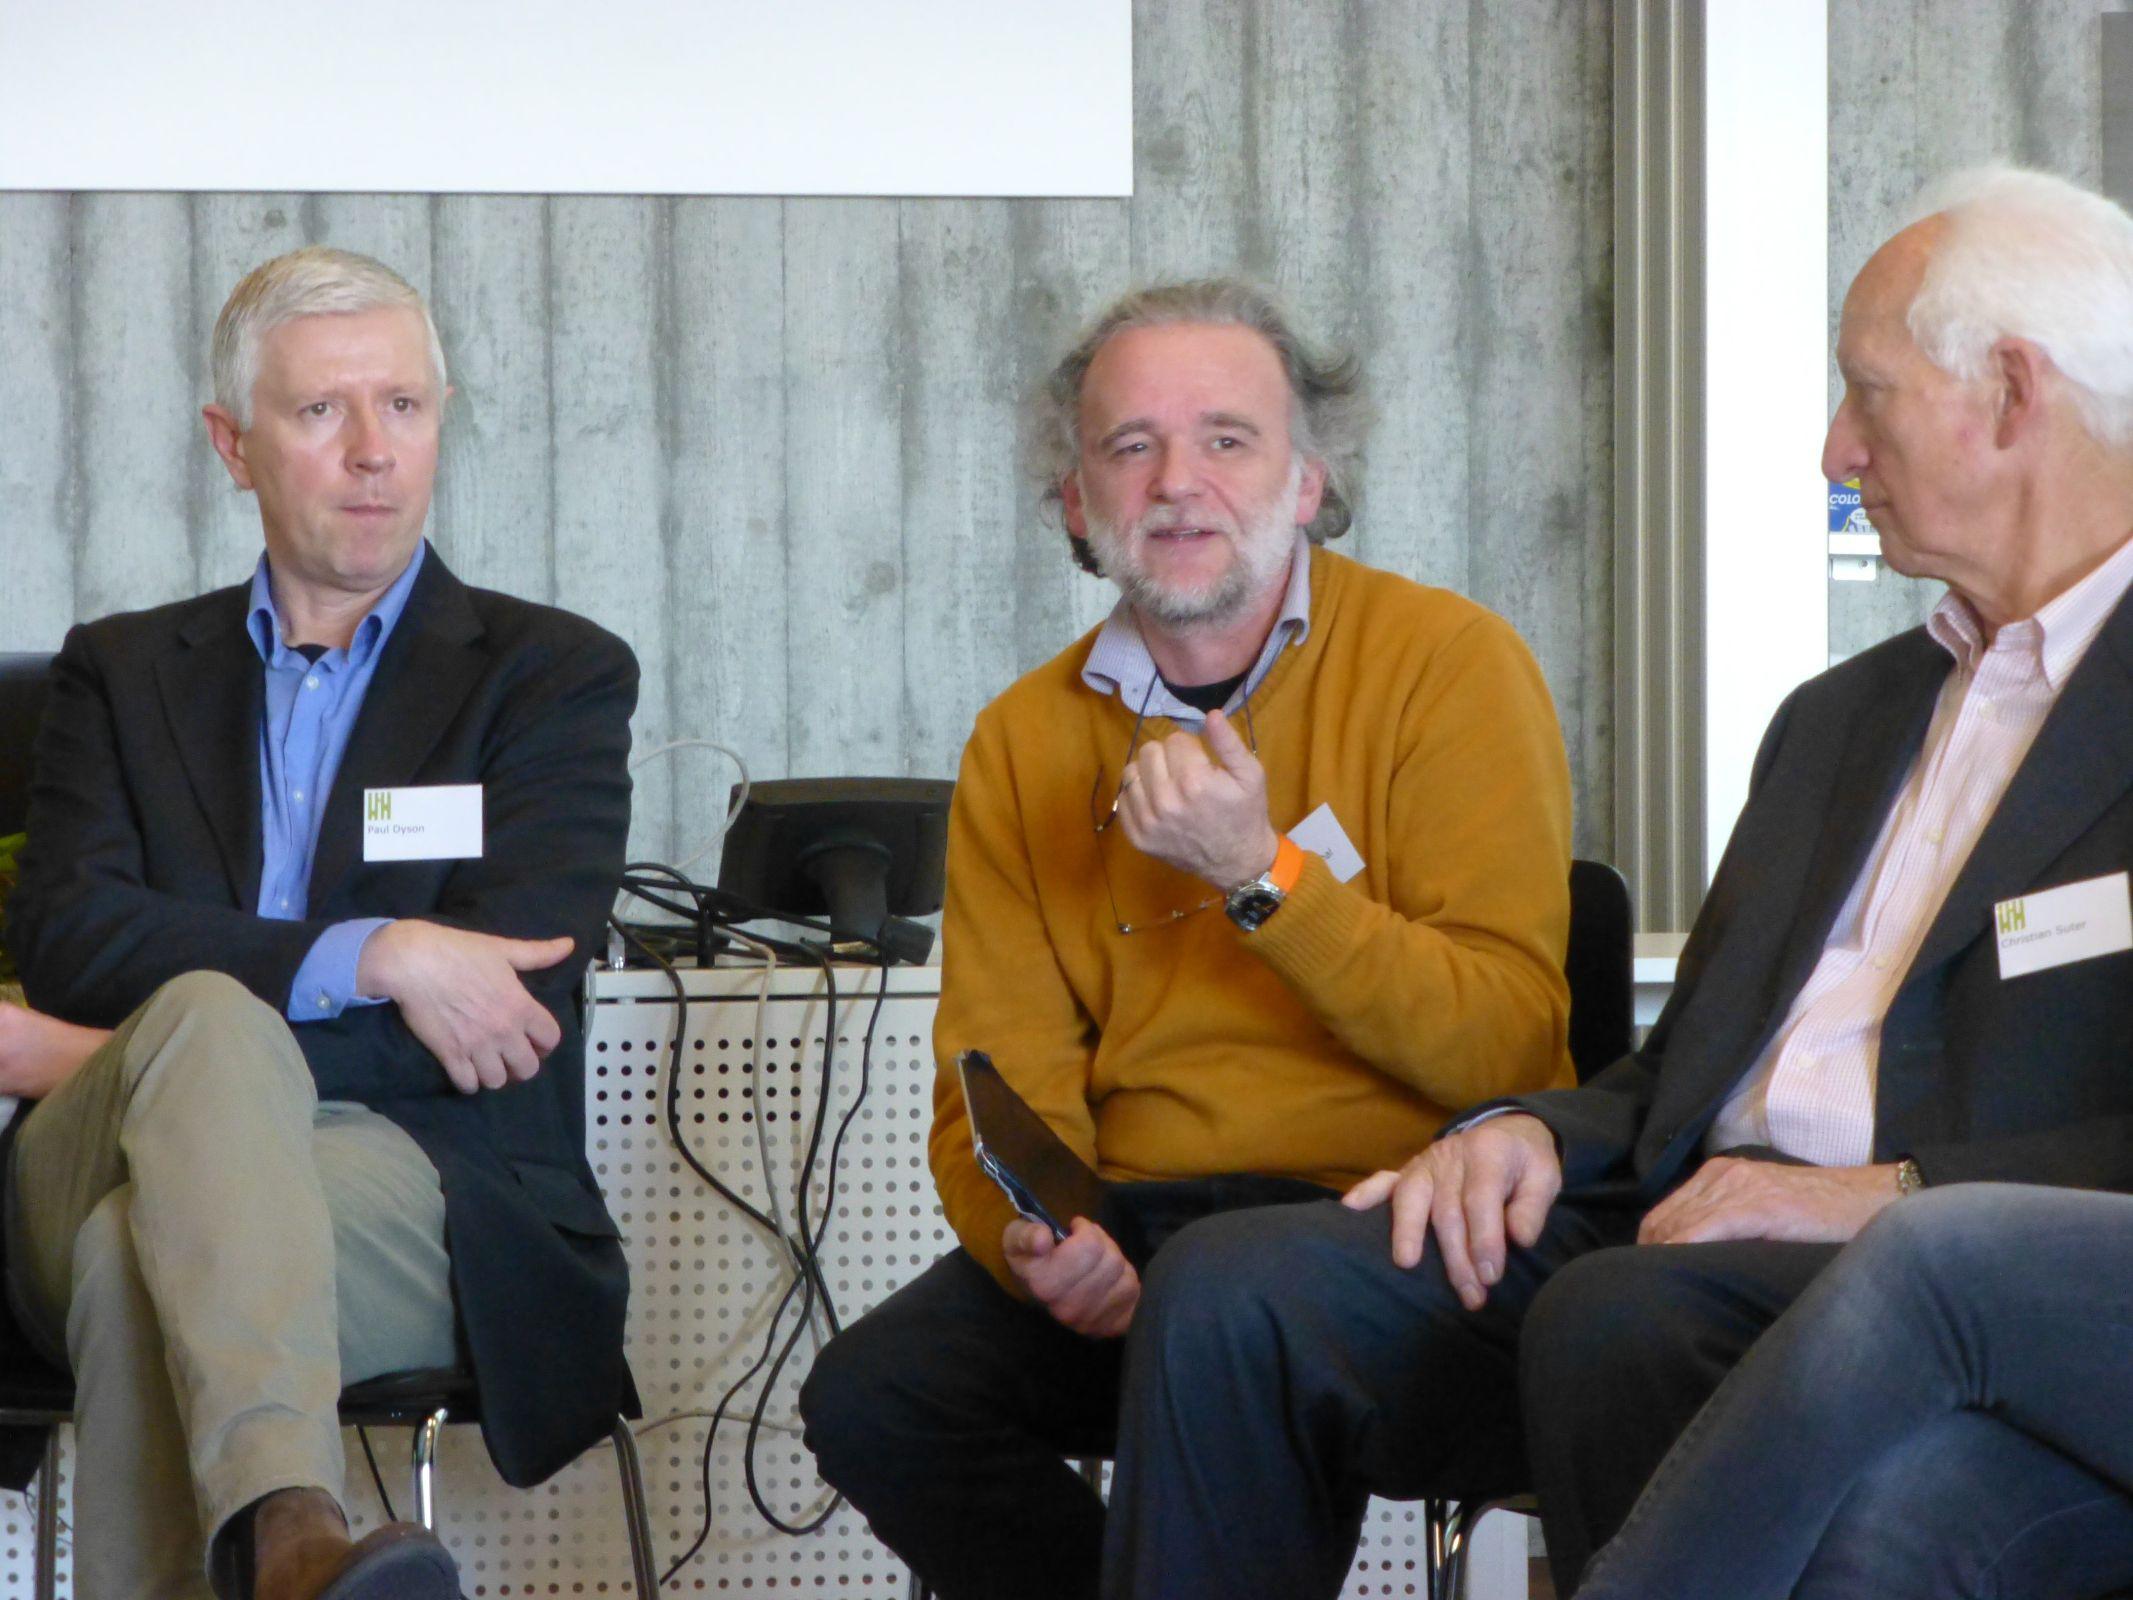 De g. à dr. : Paul Dyson (EPFL), François Maréchal (EPFL) et Christian Suter (SATW) lors de la table ronde